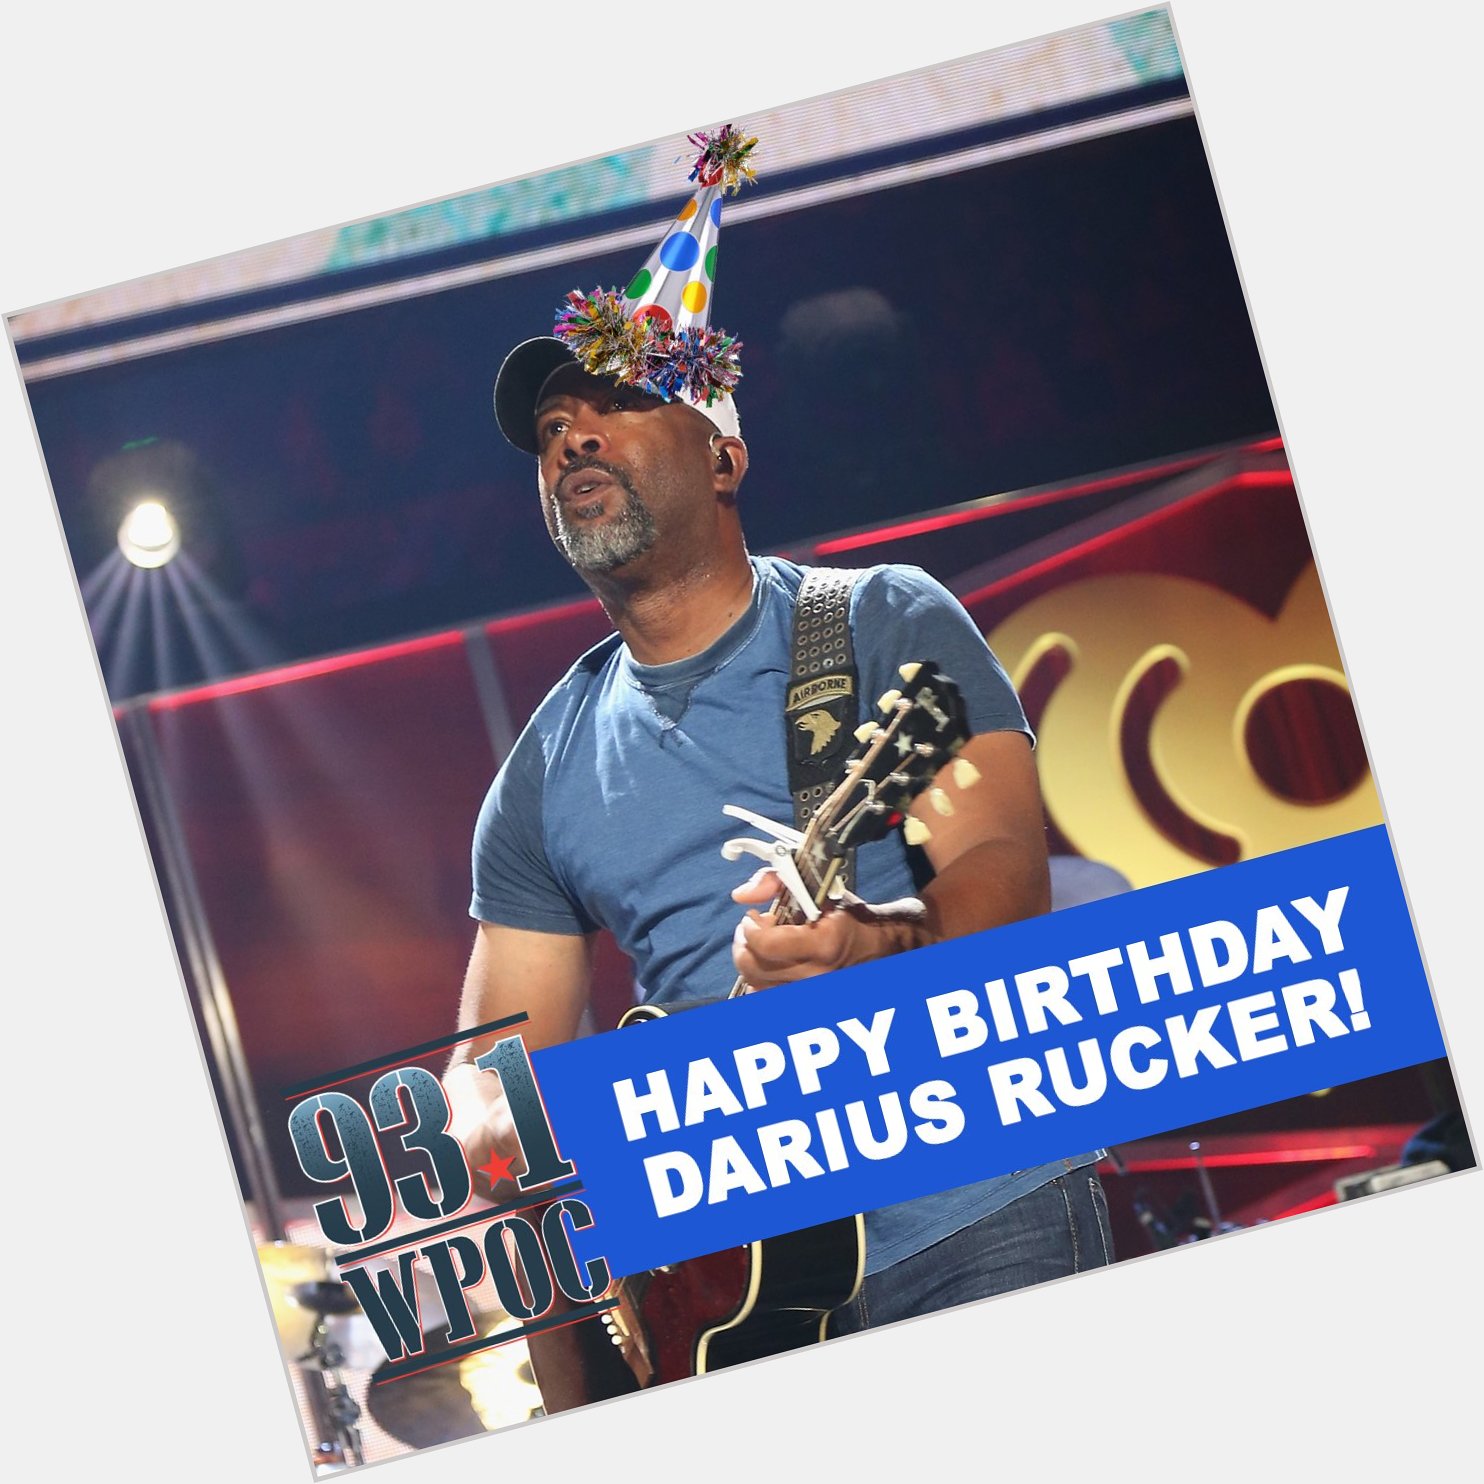 We want to wish a very happy birthday to Darius Rucker!! 